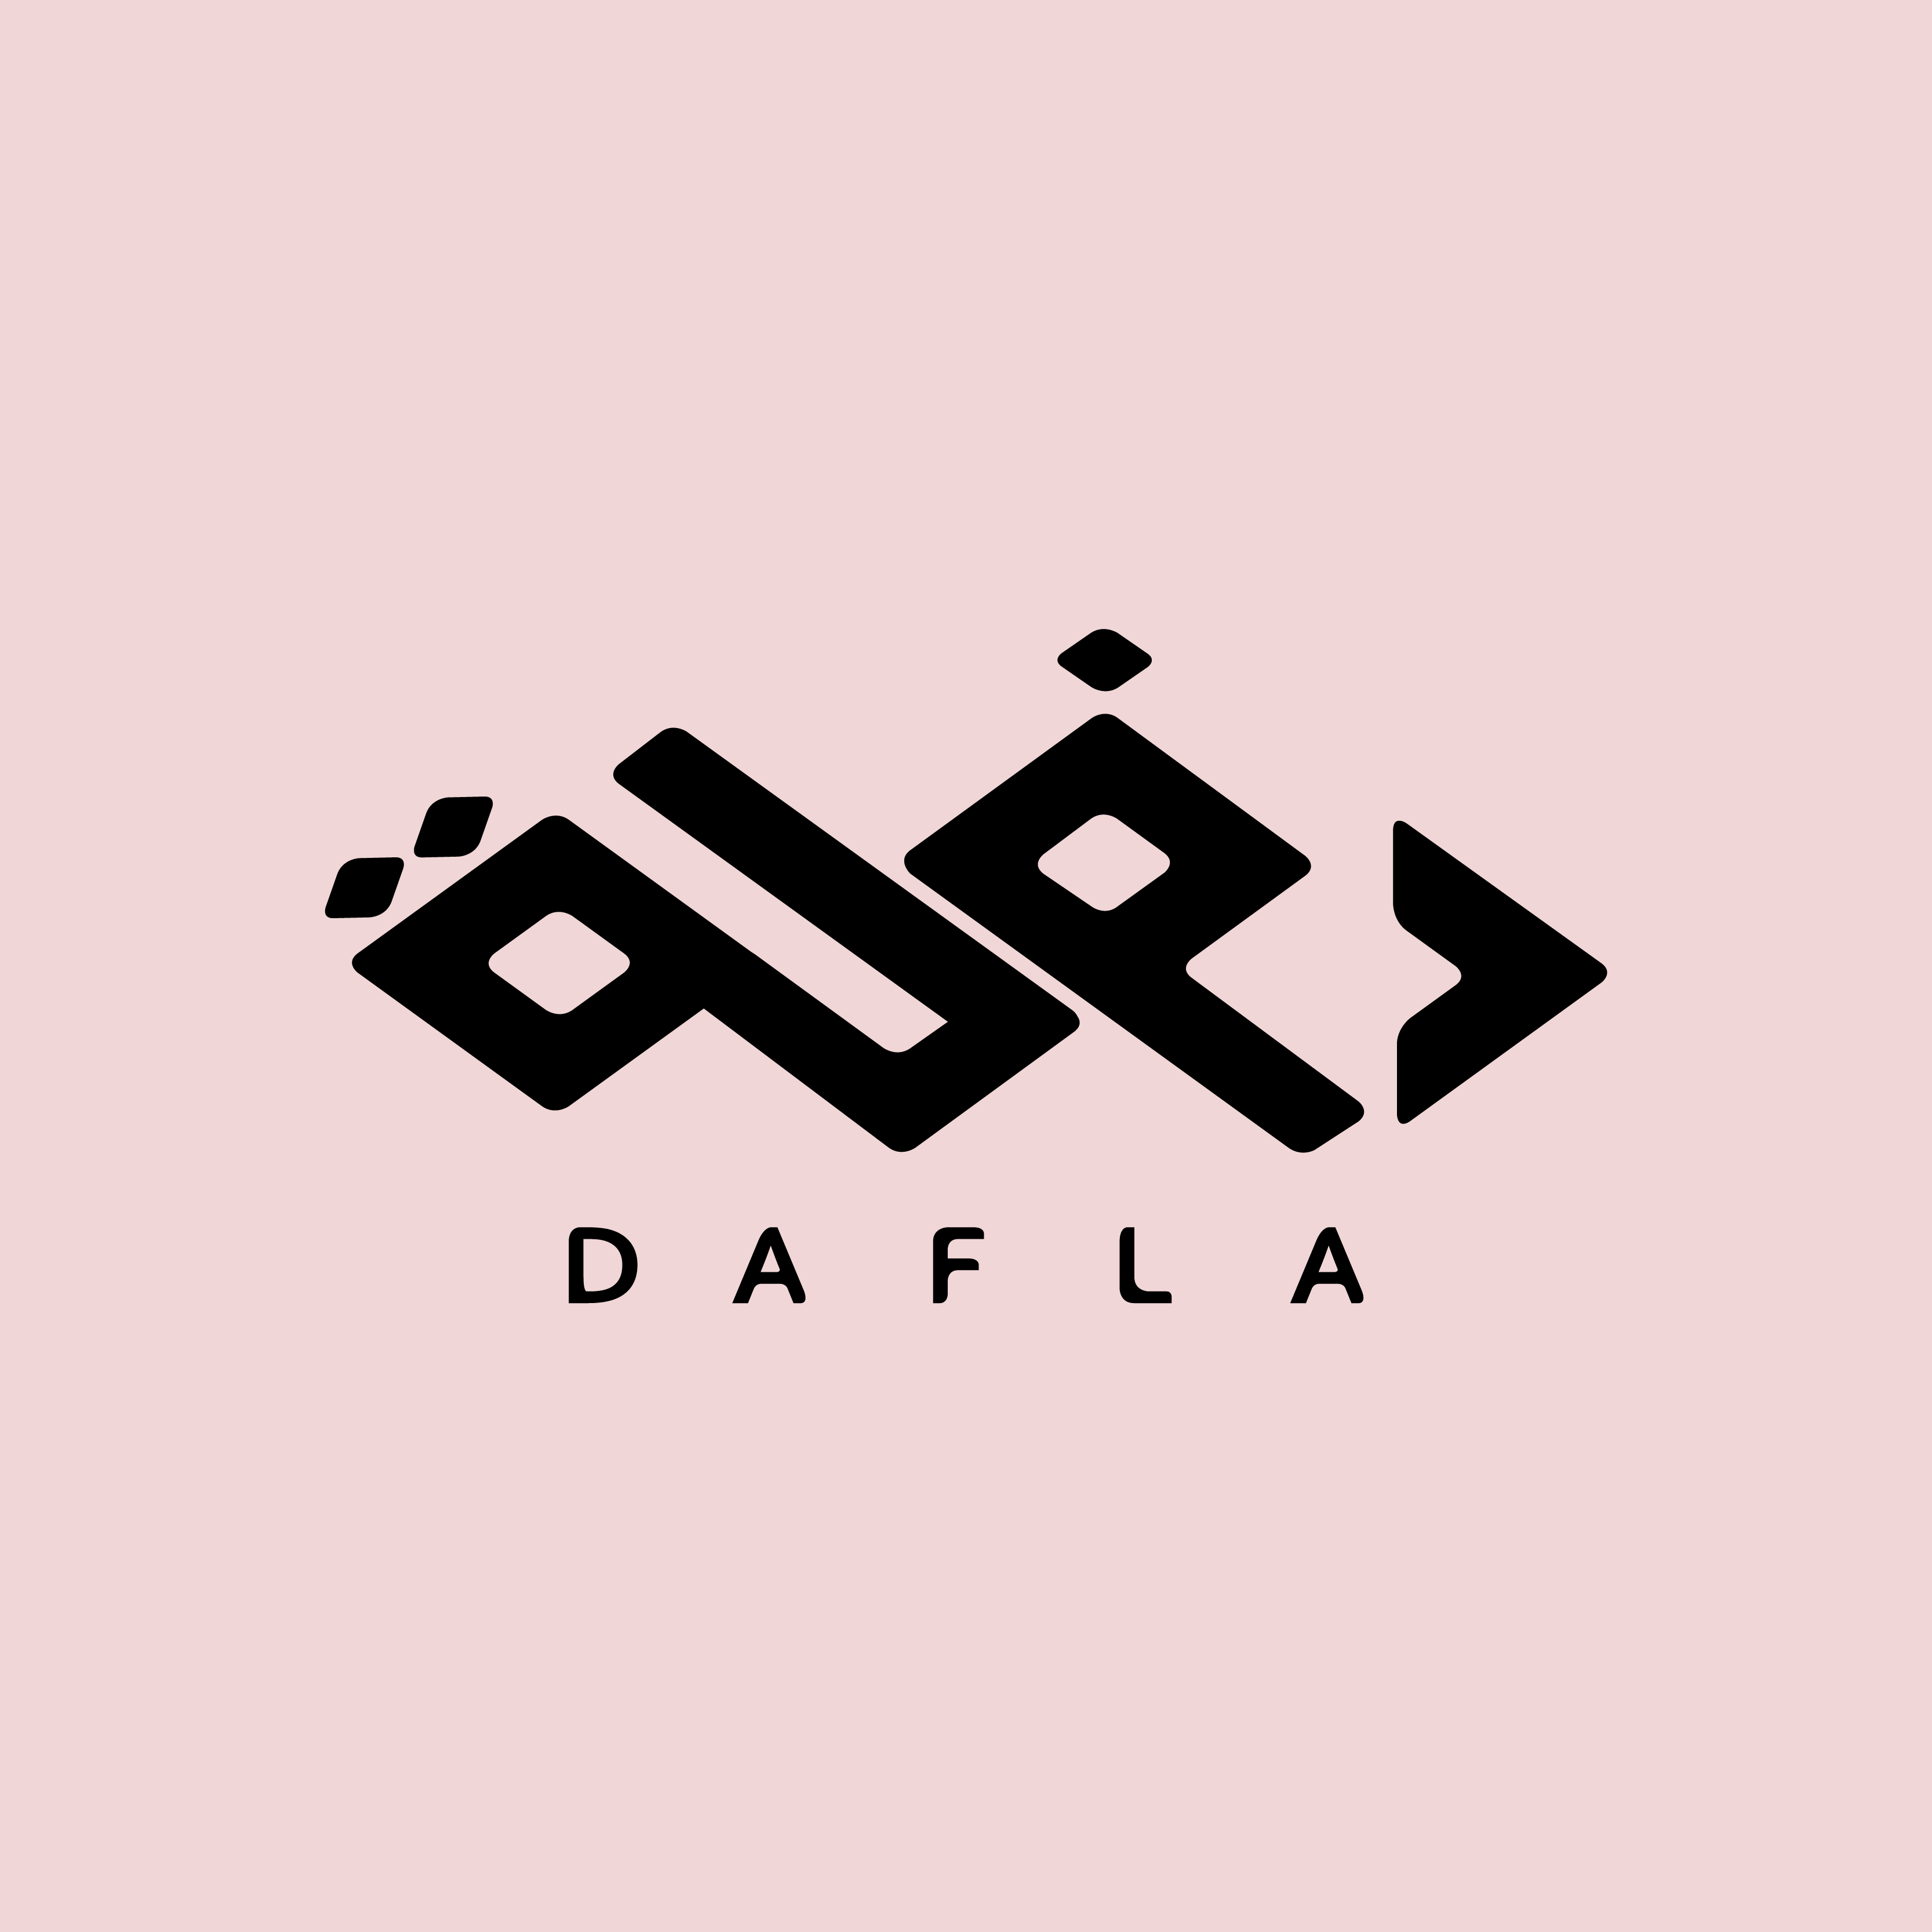 Dafla